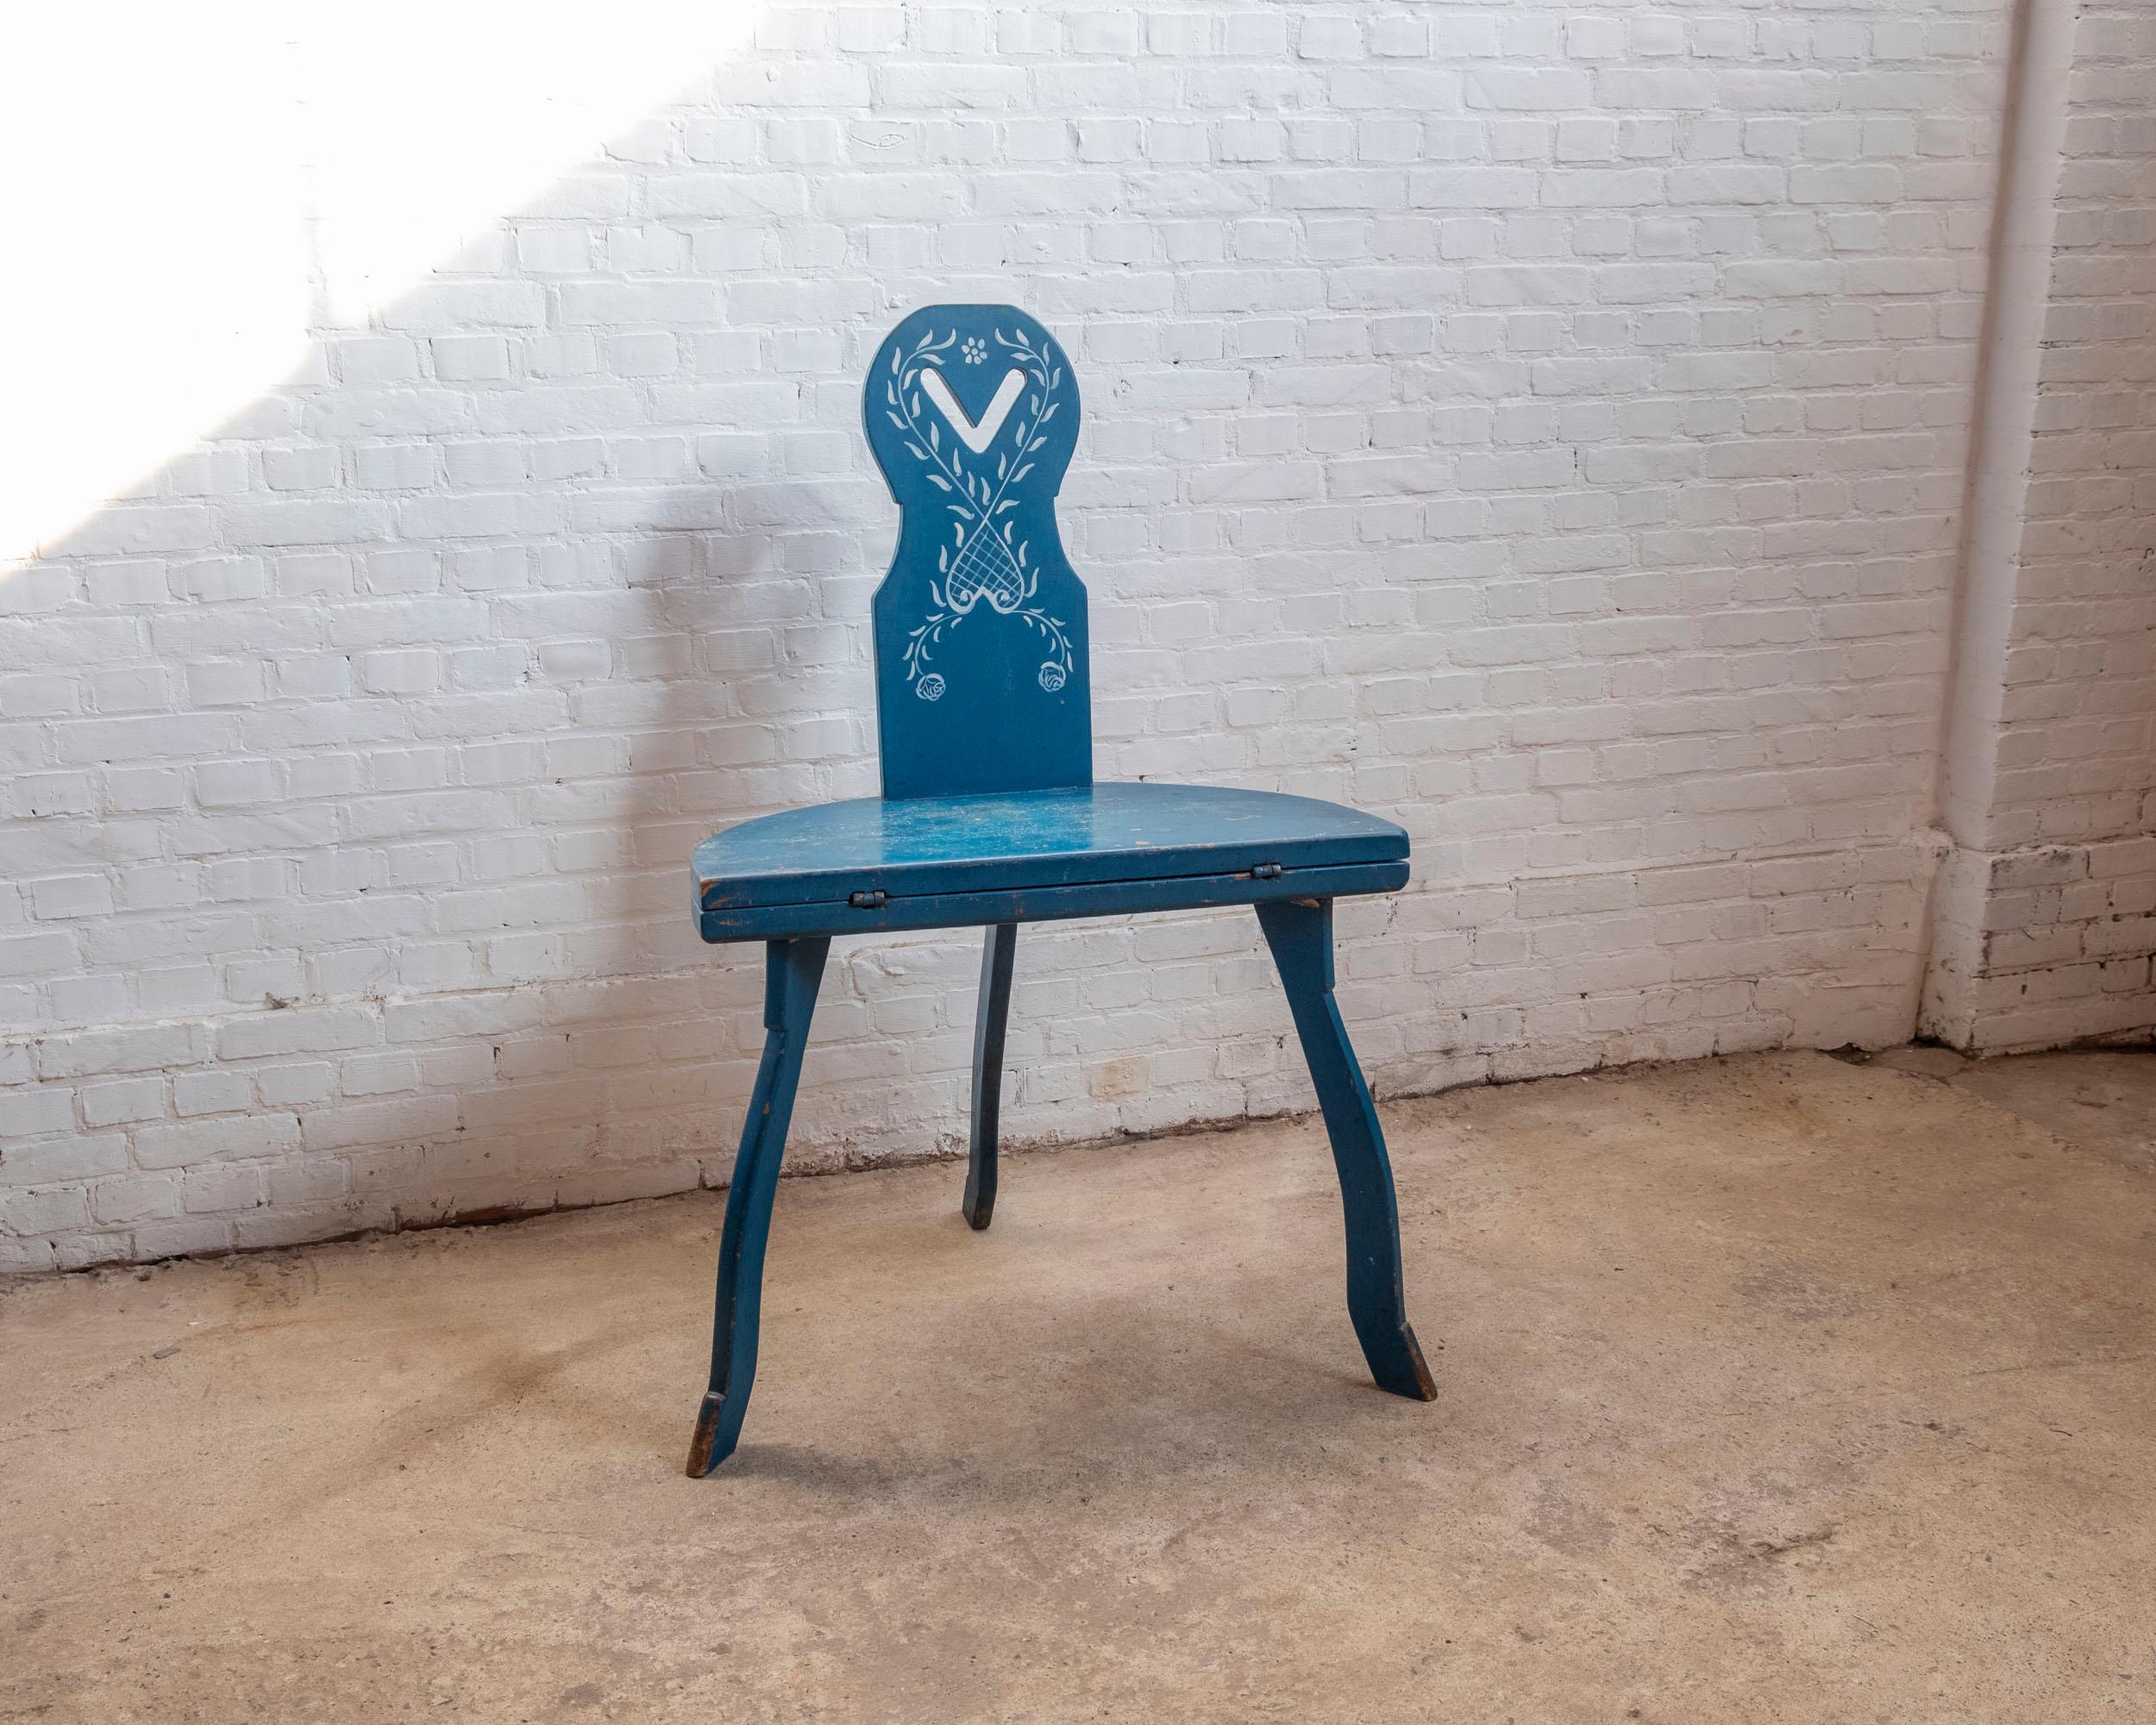 Wunderschöne Kombination aus Tisch und Stuhl. Kombinationsmöbel wurden ursprünglich hergestellt  für den Einsatz in kleinen Räumen. Dieses originelle Exemplar kann als schöner Couchtisch, Beistelltisch oder Stuhl verwendet werden.  Es ist mit einem